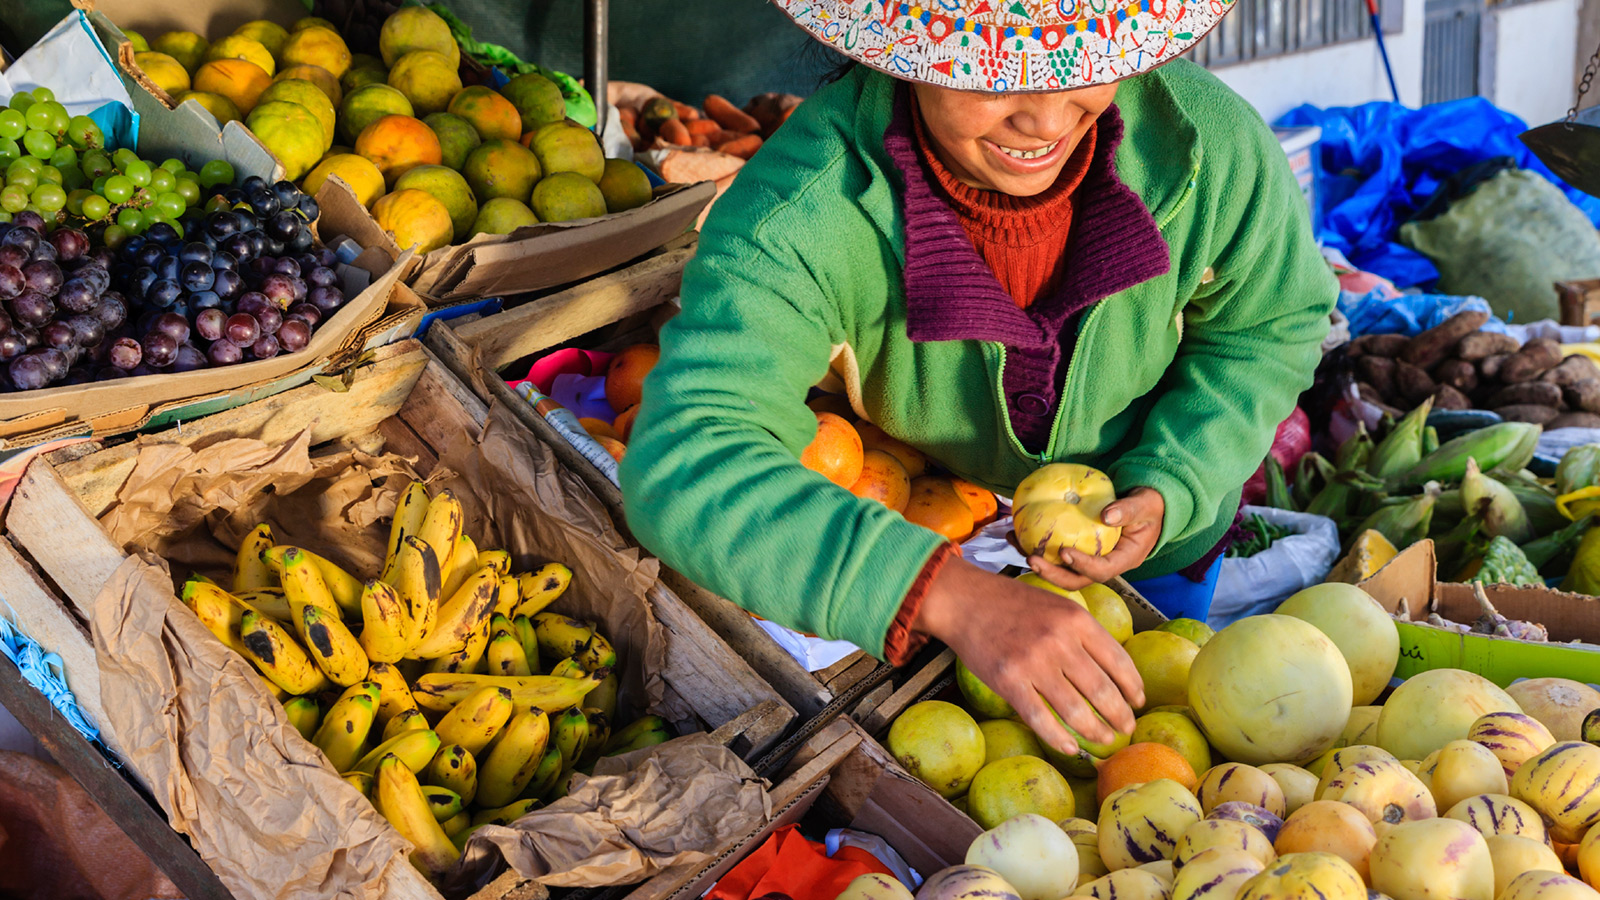 Peruvian woman selling fruit